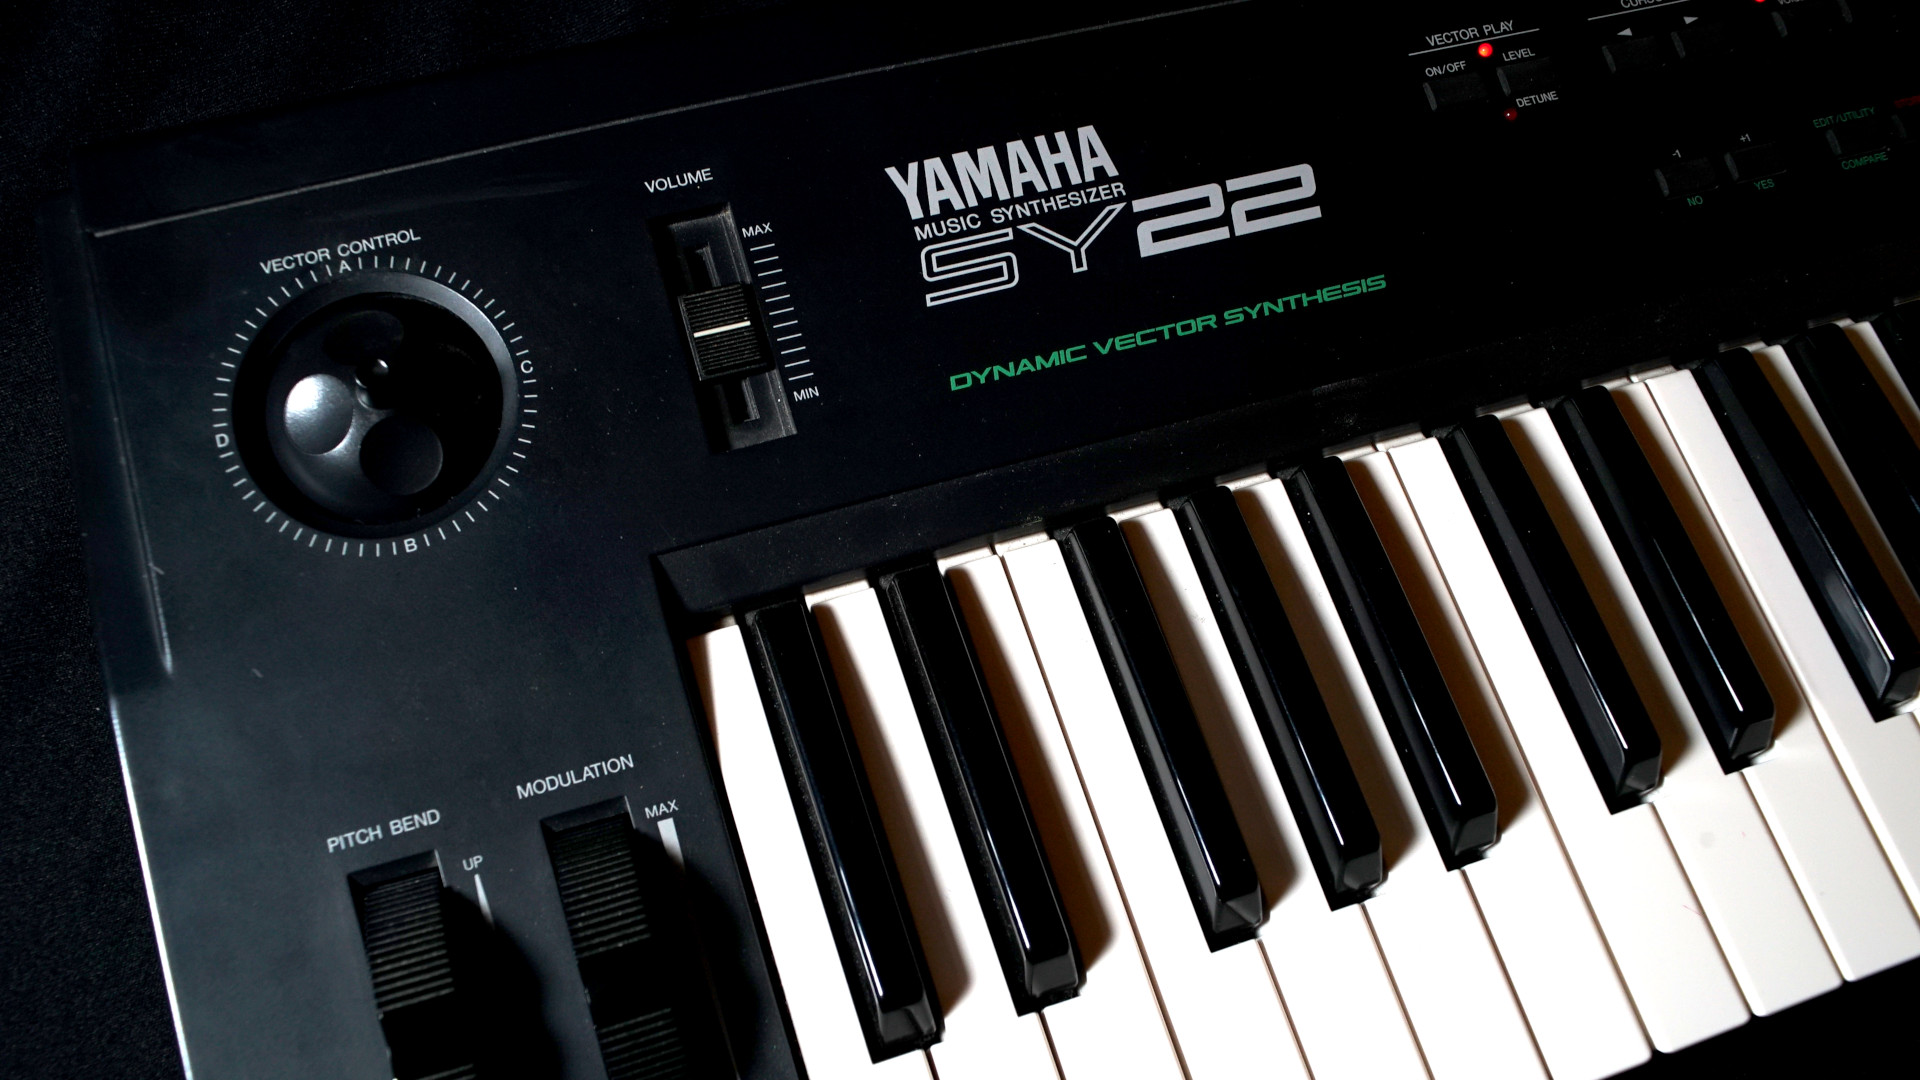 Yamaha SY22 synthesizer